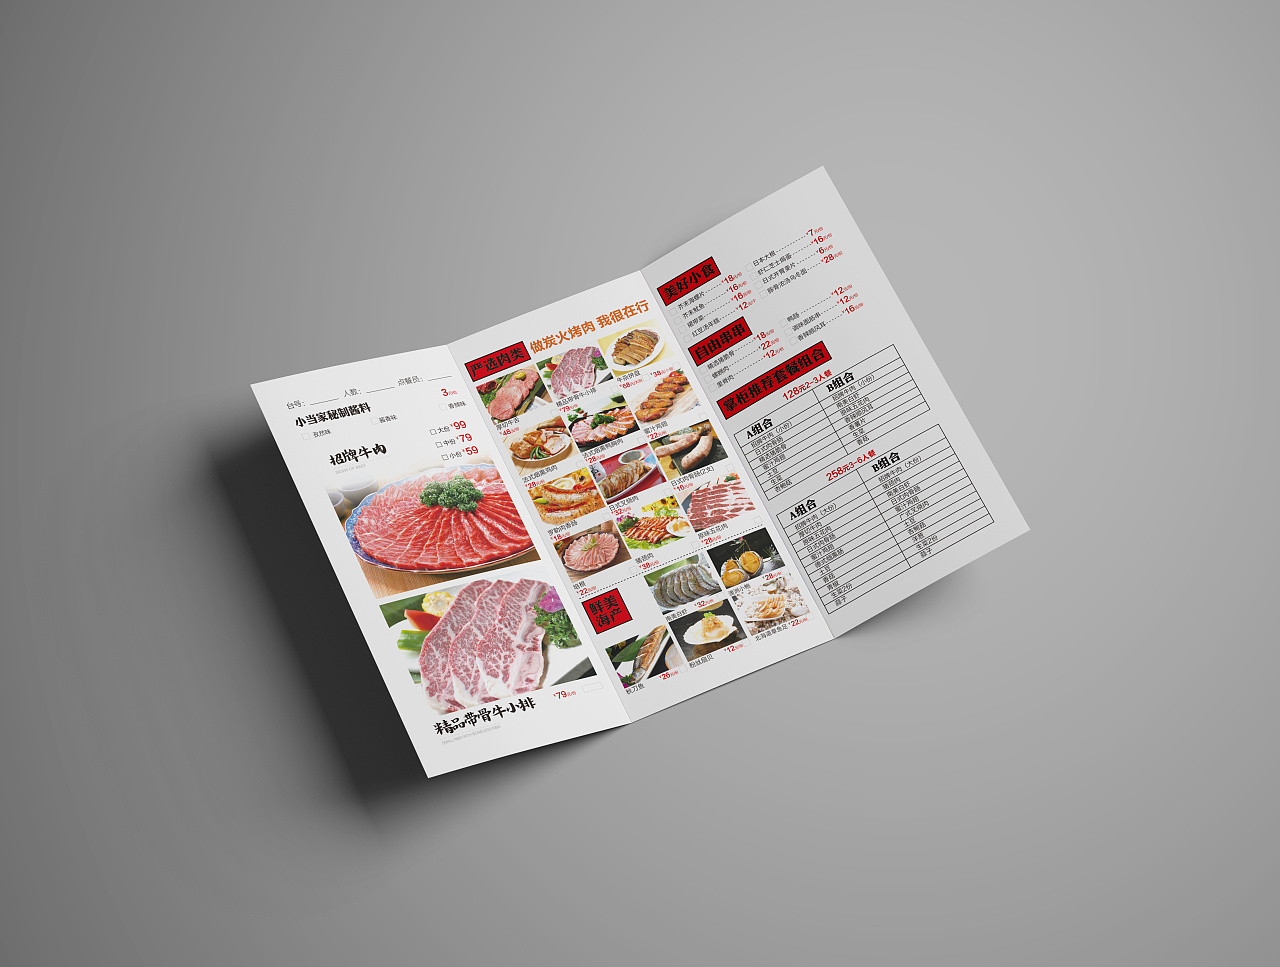 小当家日式炭火烤肉餐厅 菜谱 菜单 餐牌 海报 